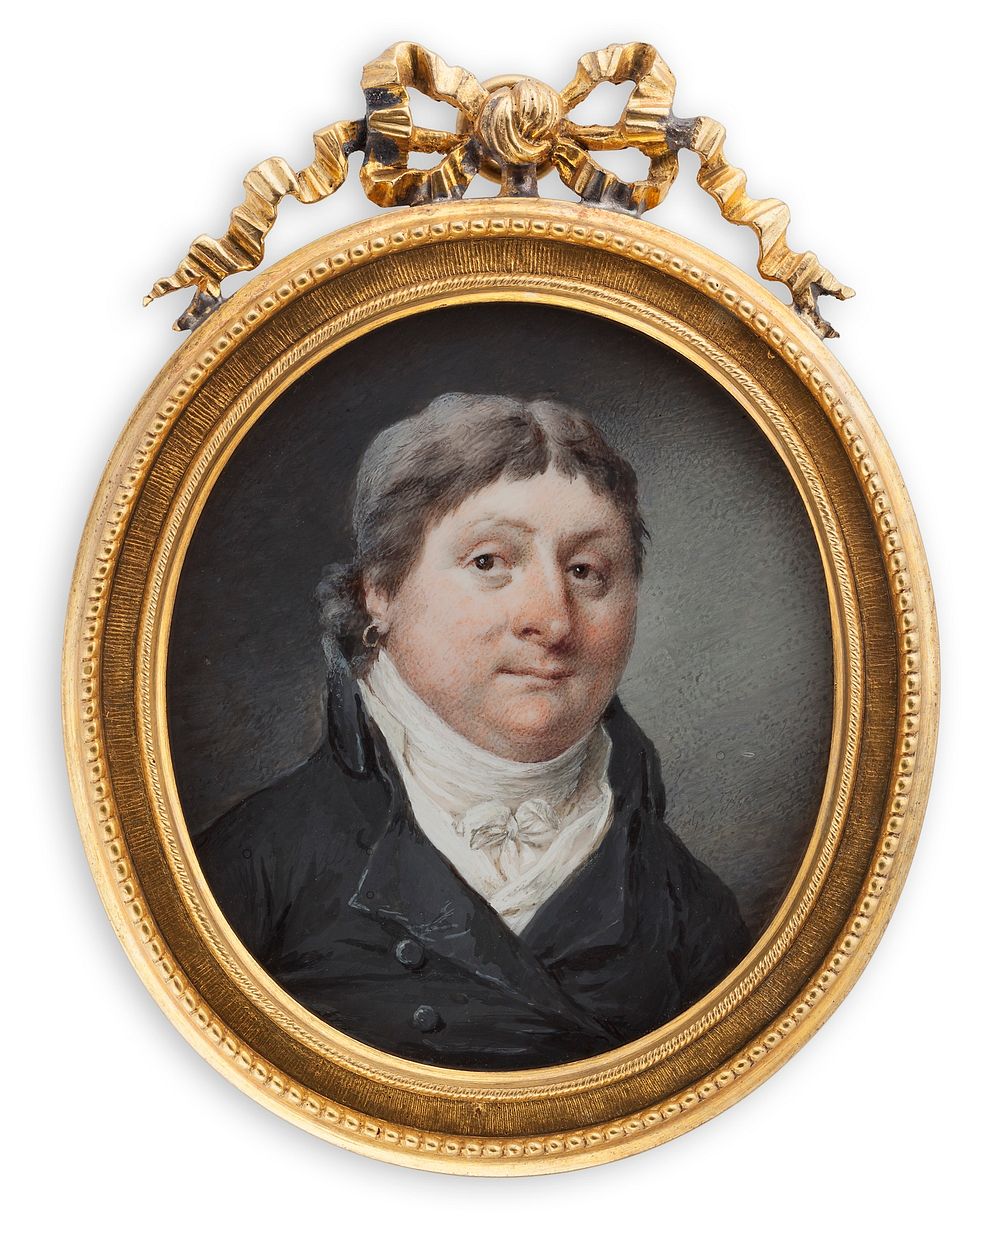 Portrait of a man, 1757 - 1807